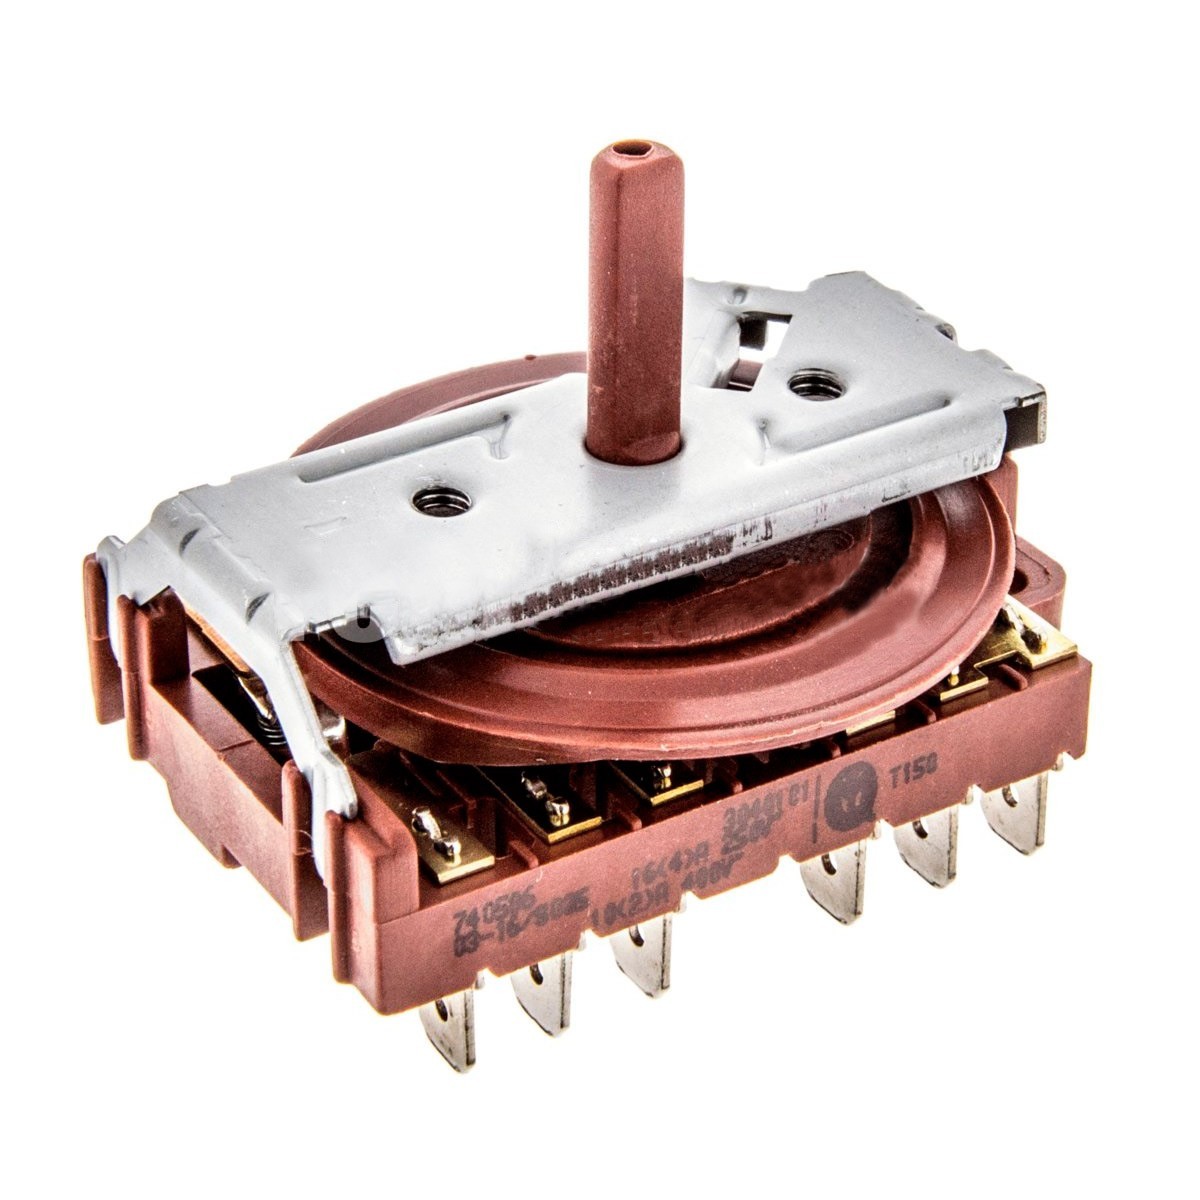 995444128 Código del Recambio MIRTUX Selector de Horno eléctrico y Placa de Cocina Teka de 8 Posiciones sin termostato 